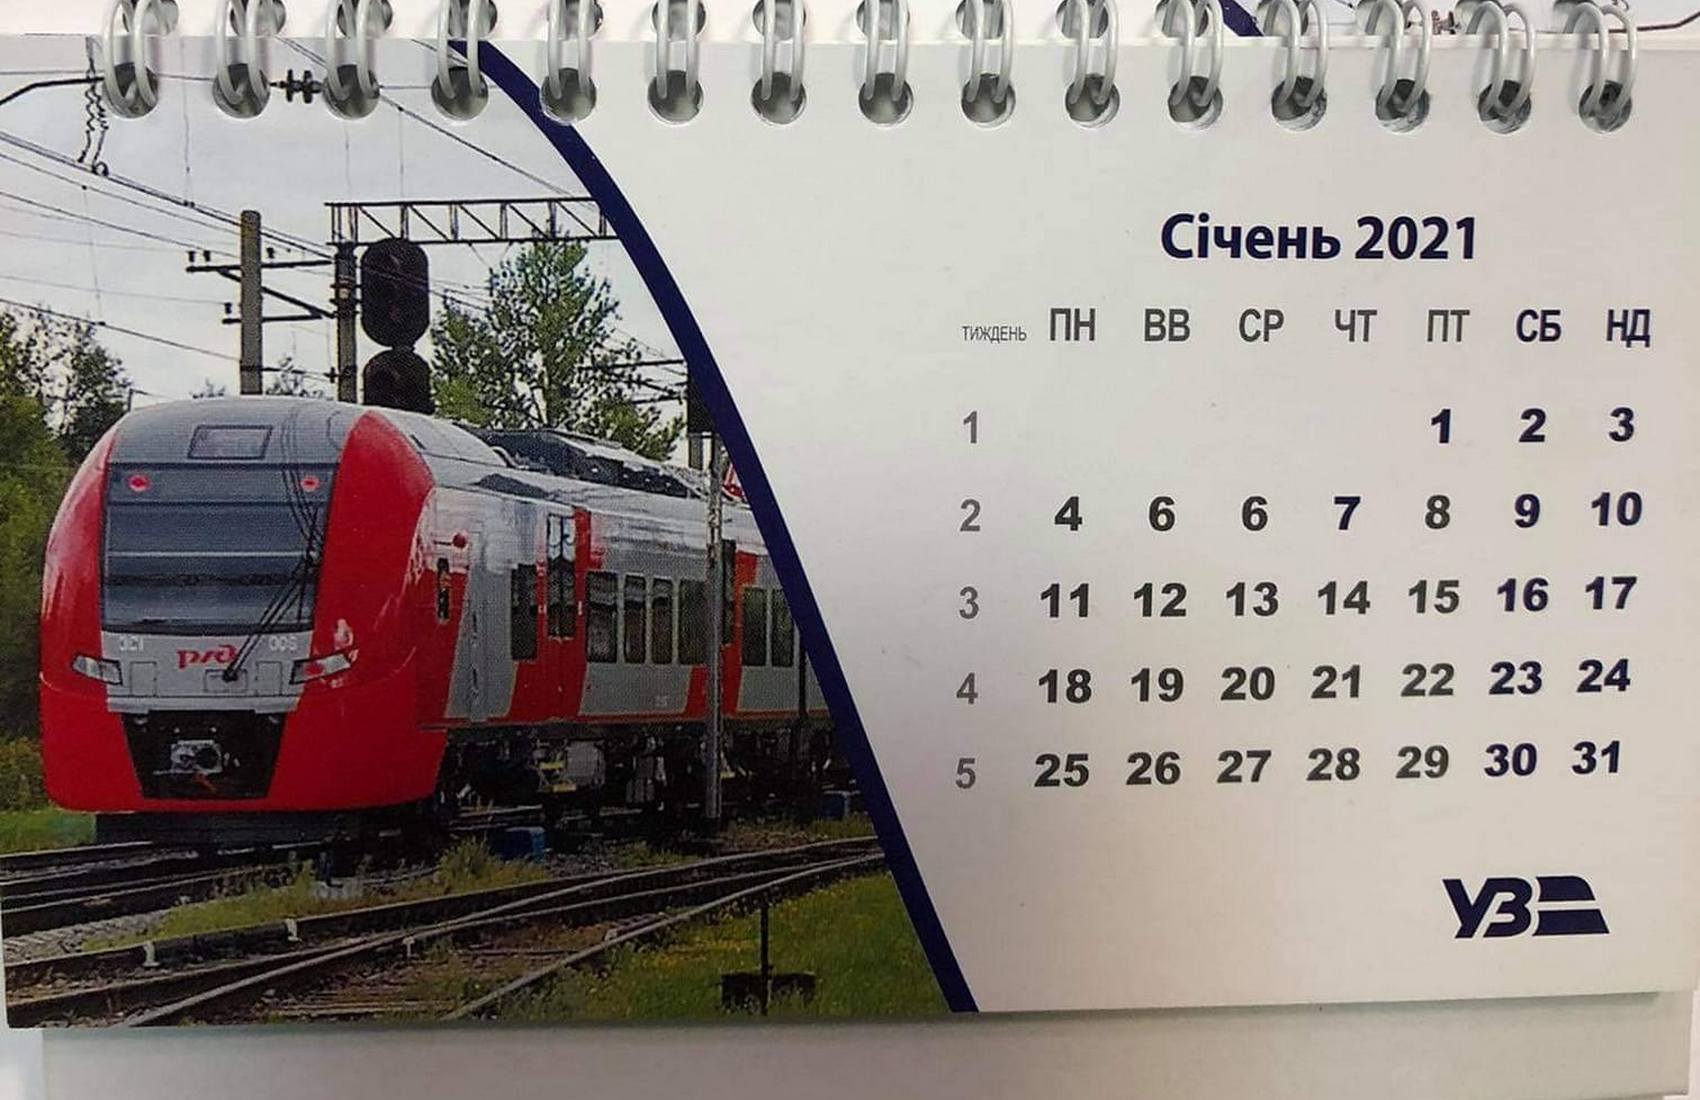 «Укрзализница» оправдалась за календарь с российским поездом